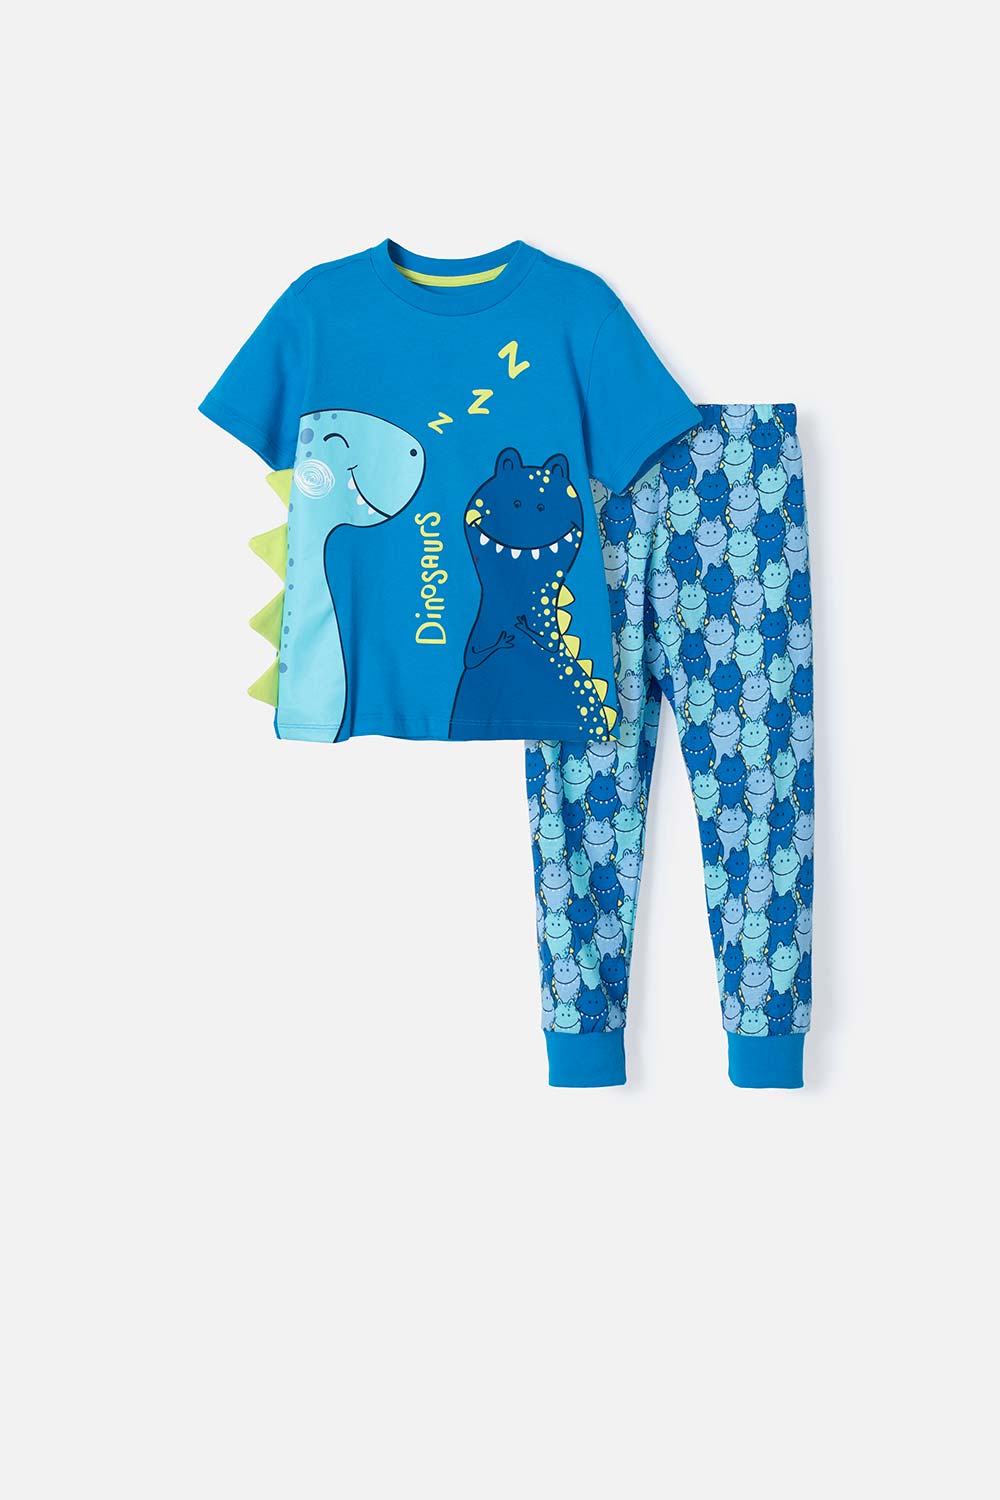 Pijama Spiderman Disney - Azul claro